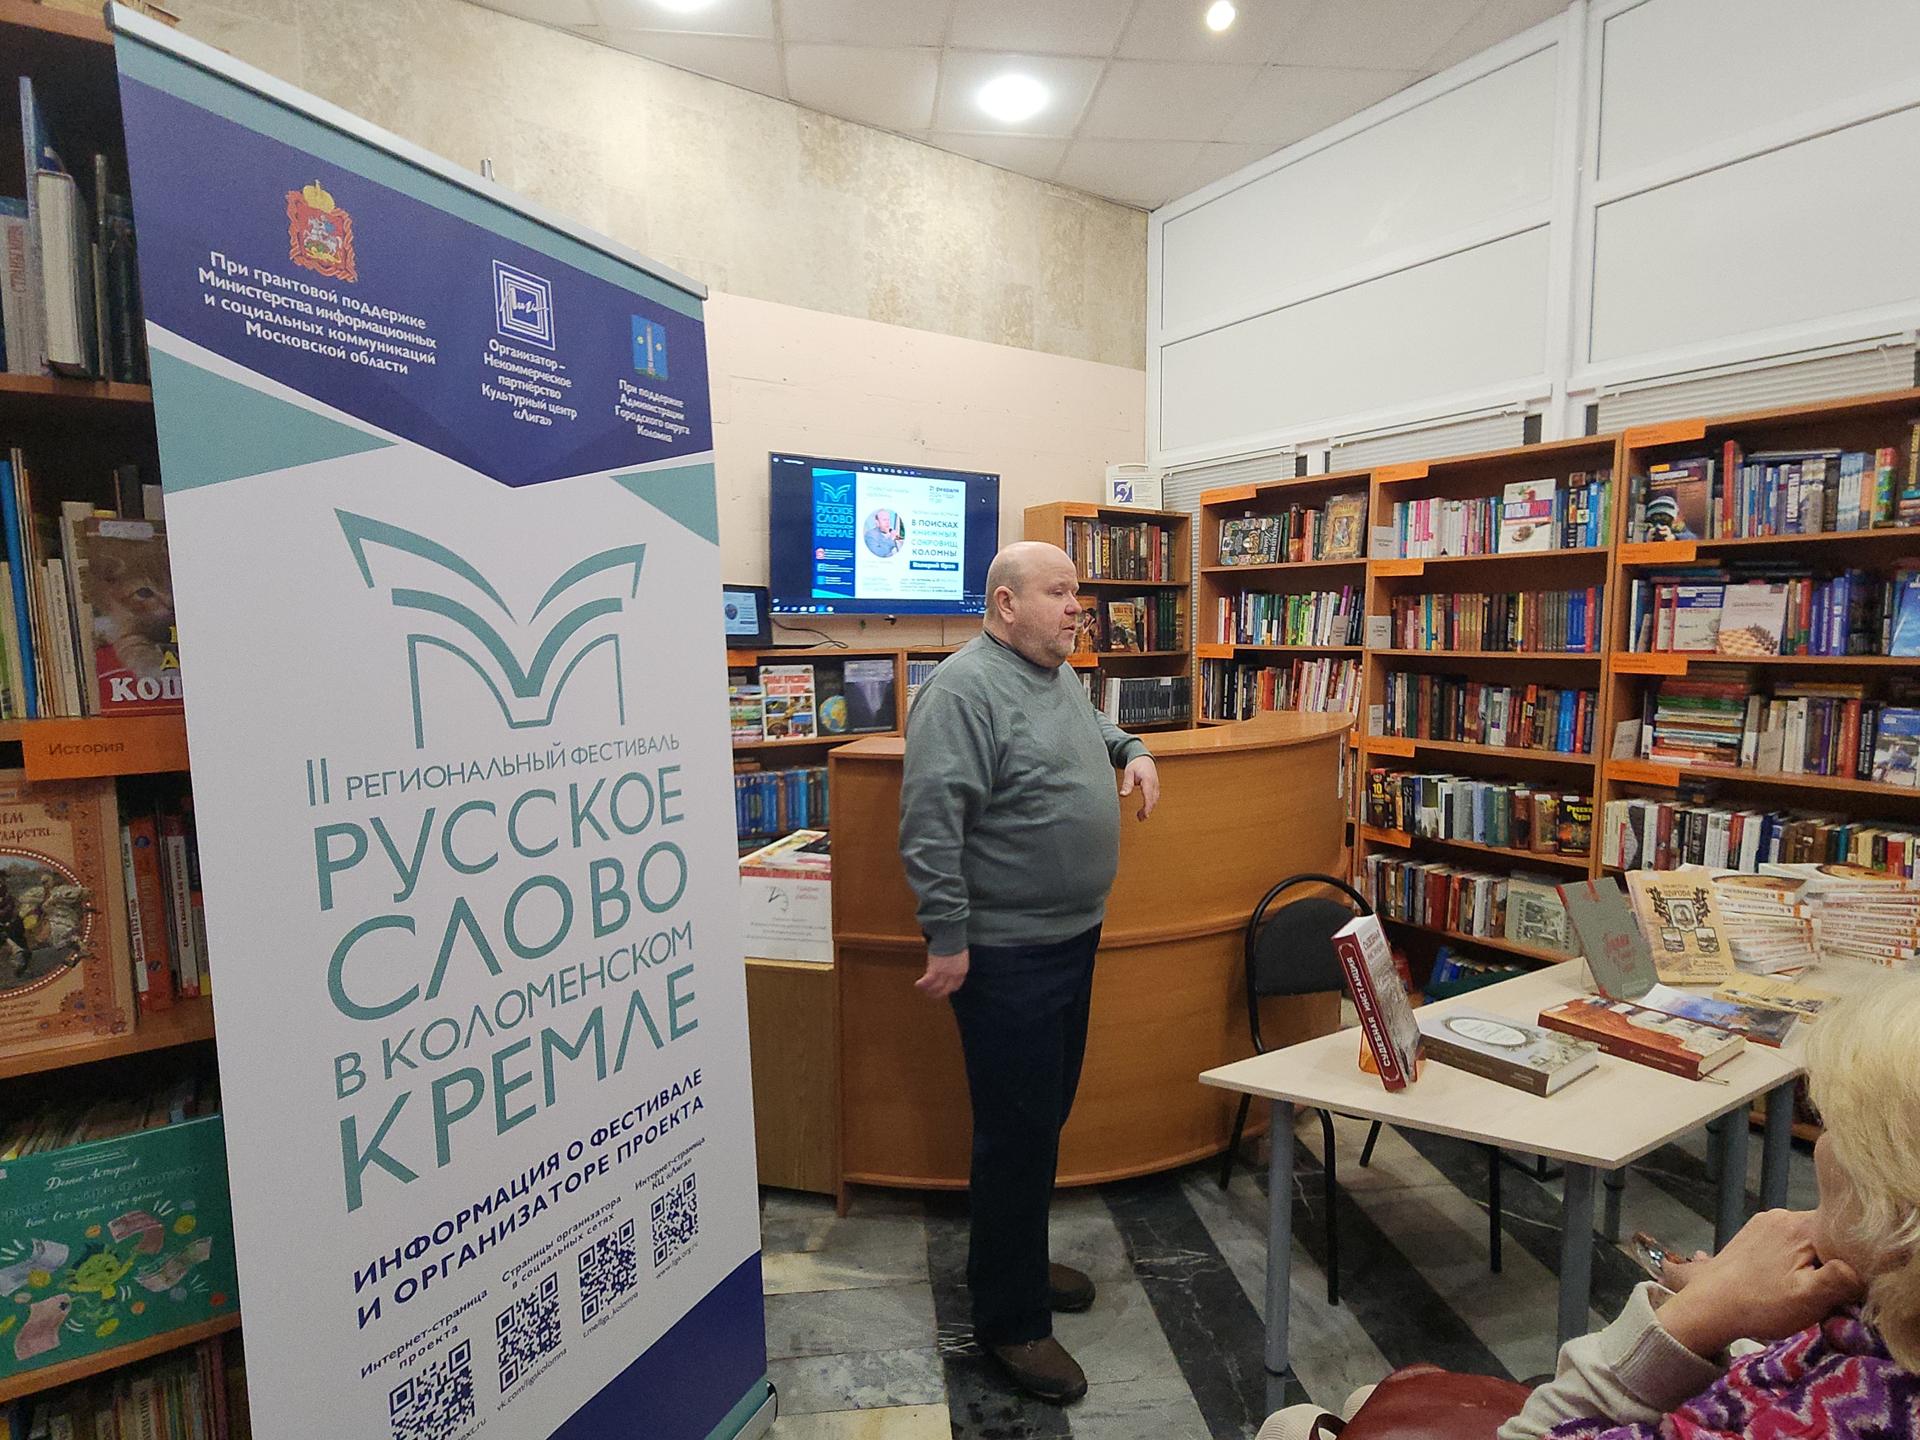 Фестиваль «Русское слово в Коломенском кремле» приглашает на творческие встречи с писателями